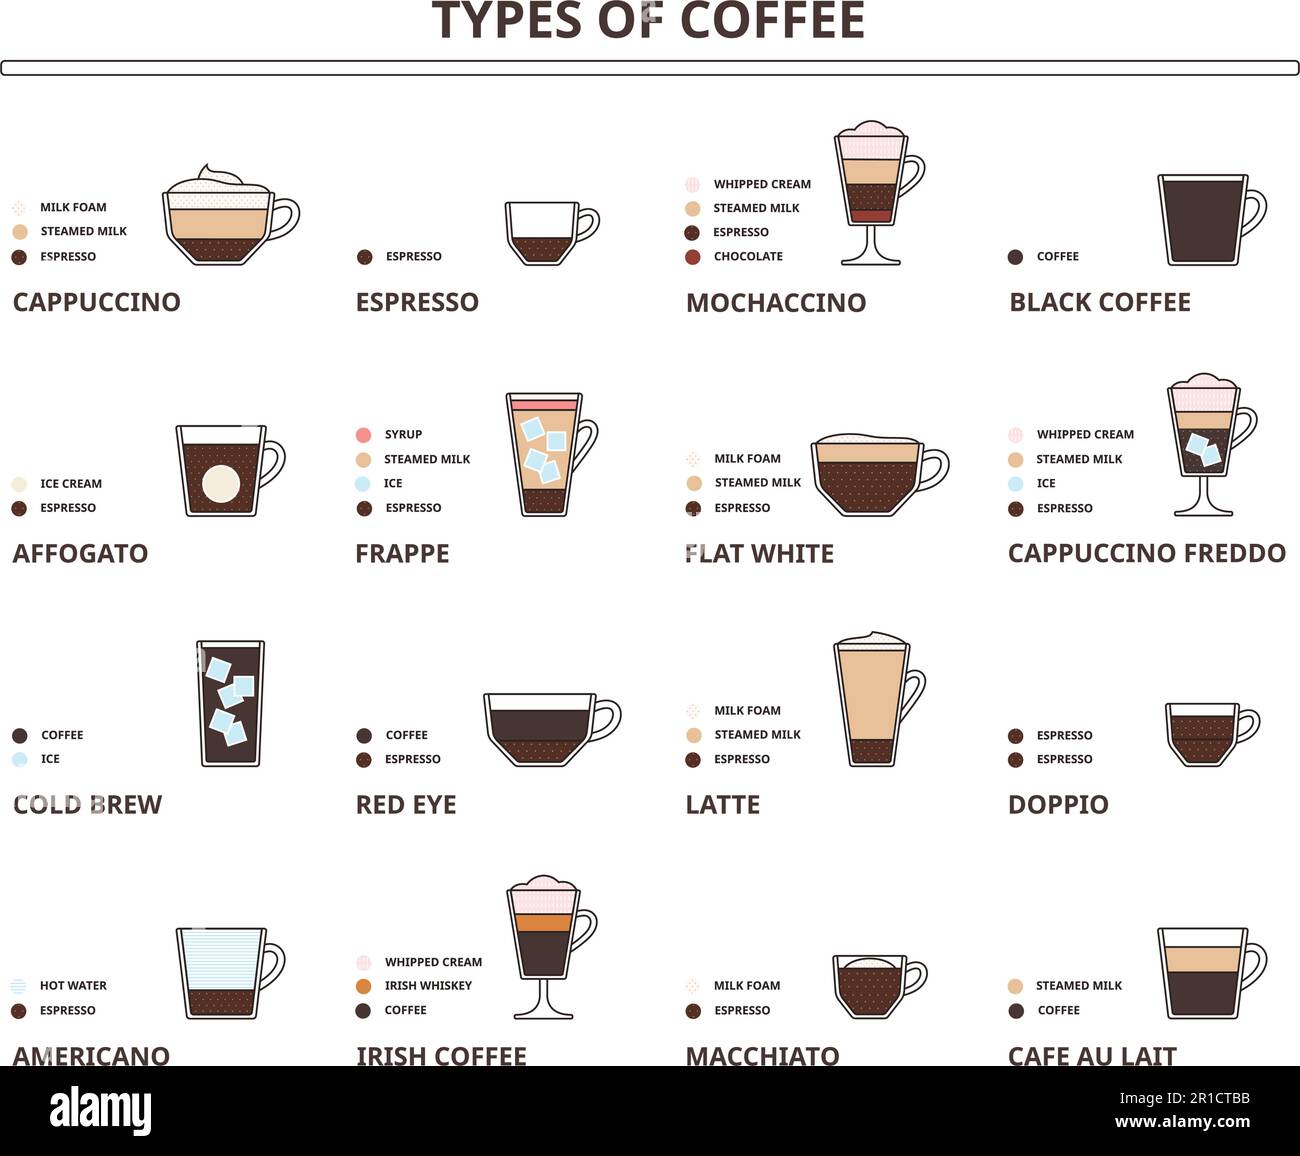 Verschiedene Kaffeegetränke. Cappuccino, Latte, flaches Weiß und  Amaricano-Zutatenschema für Café-Menüs, Vektorbildungs-Set  Stock-Vektorgrafik - Alamy